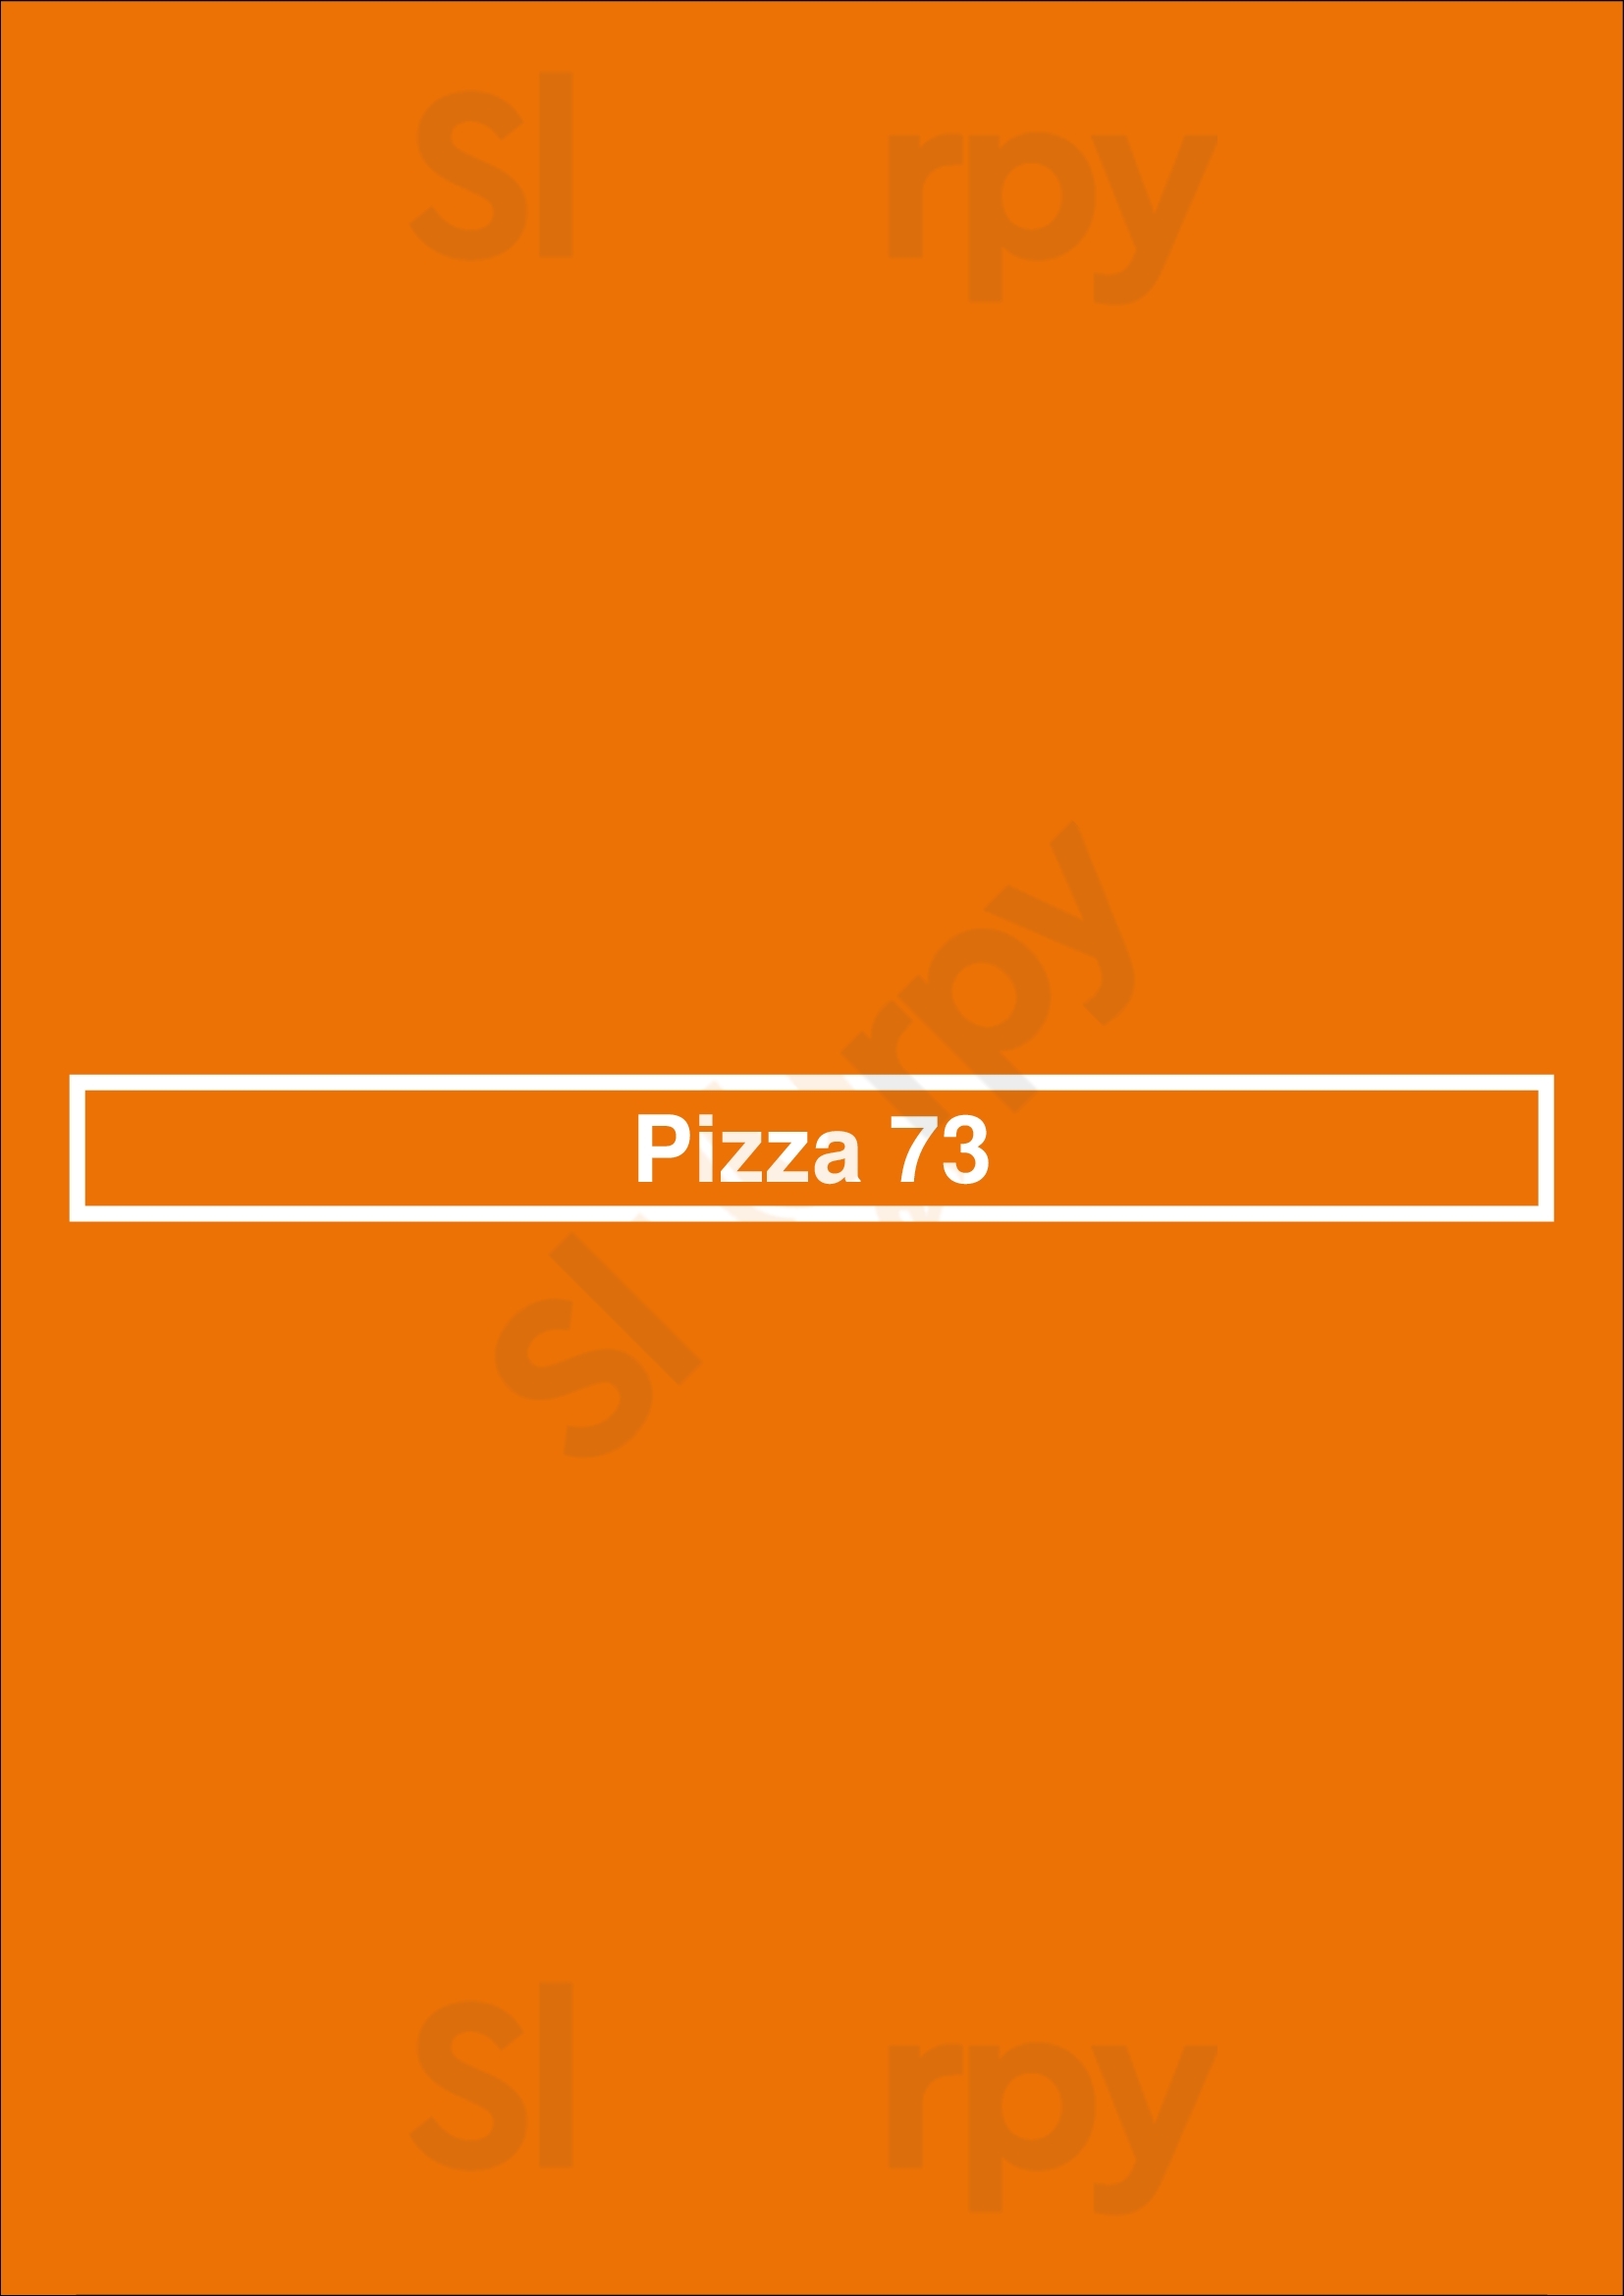 Pizza 73 Edmonton Menu - 1